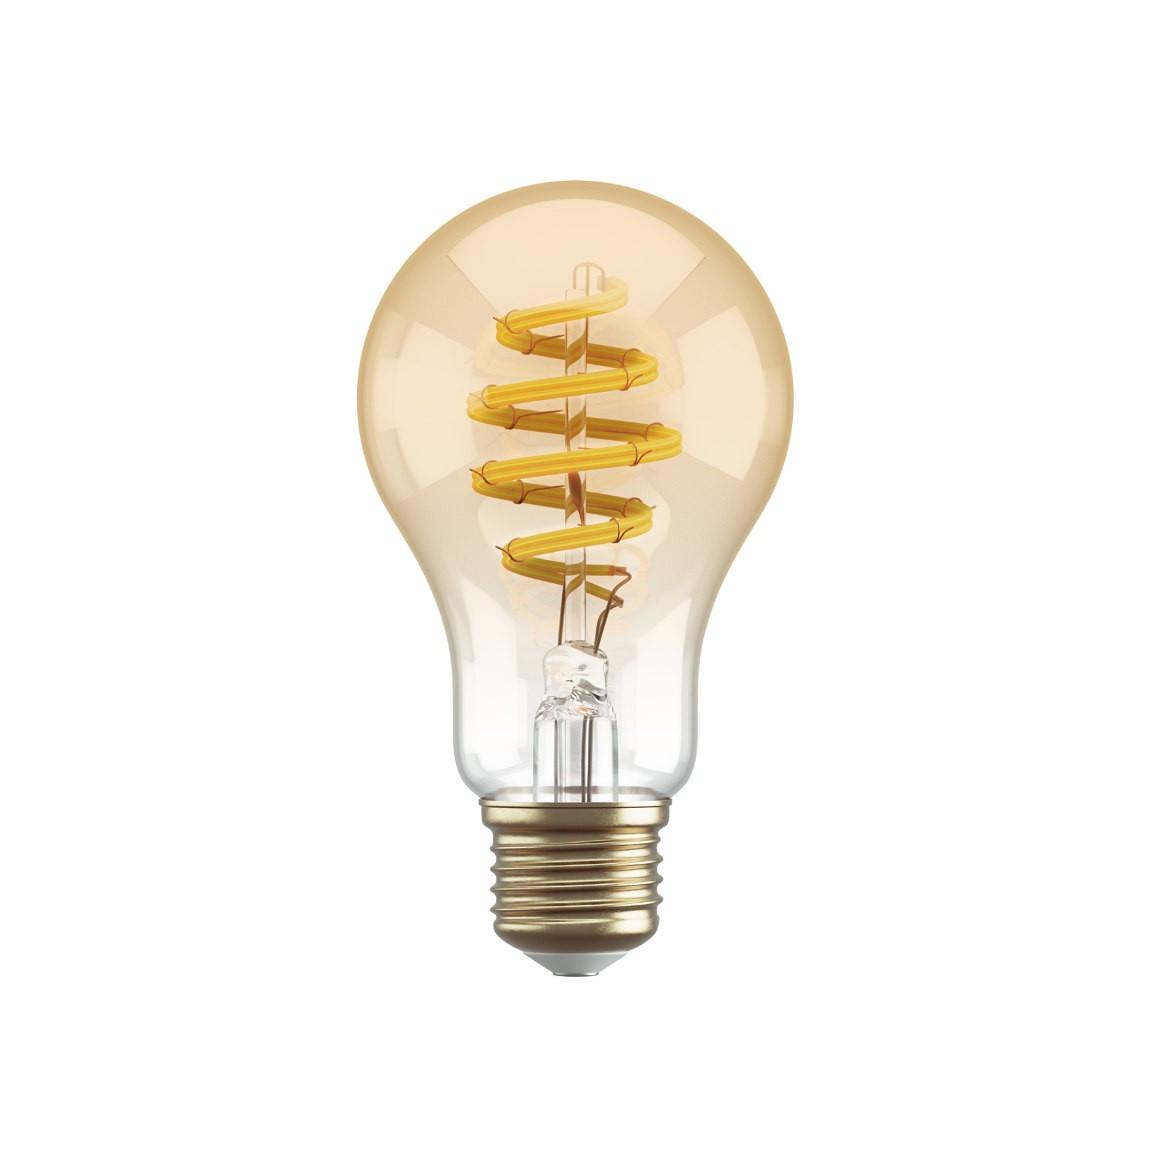 Hombli Filament Bulb CCT E27 A60-Amber 